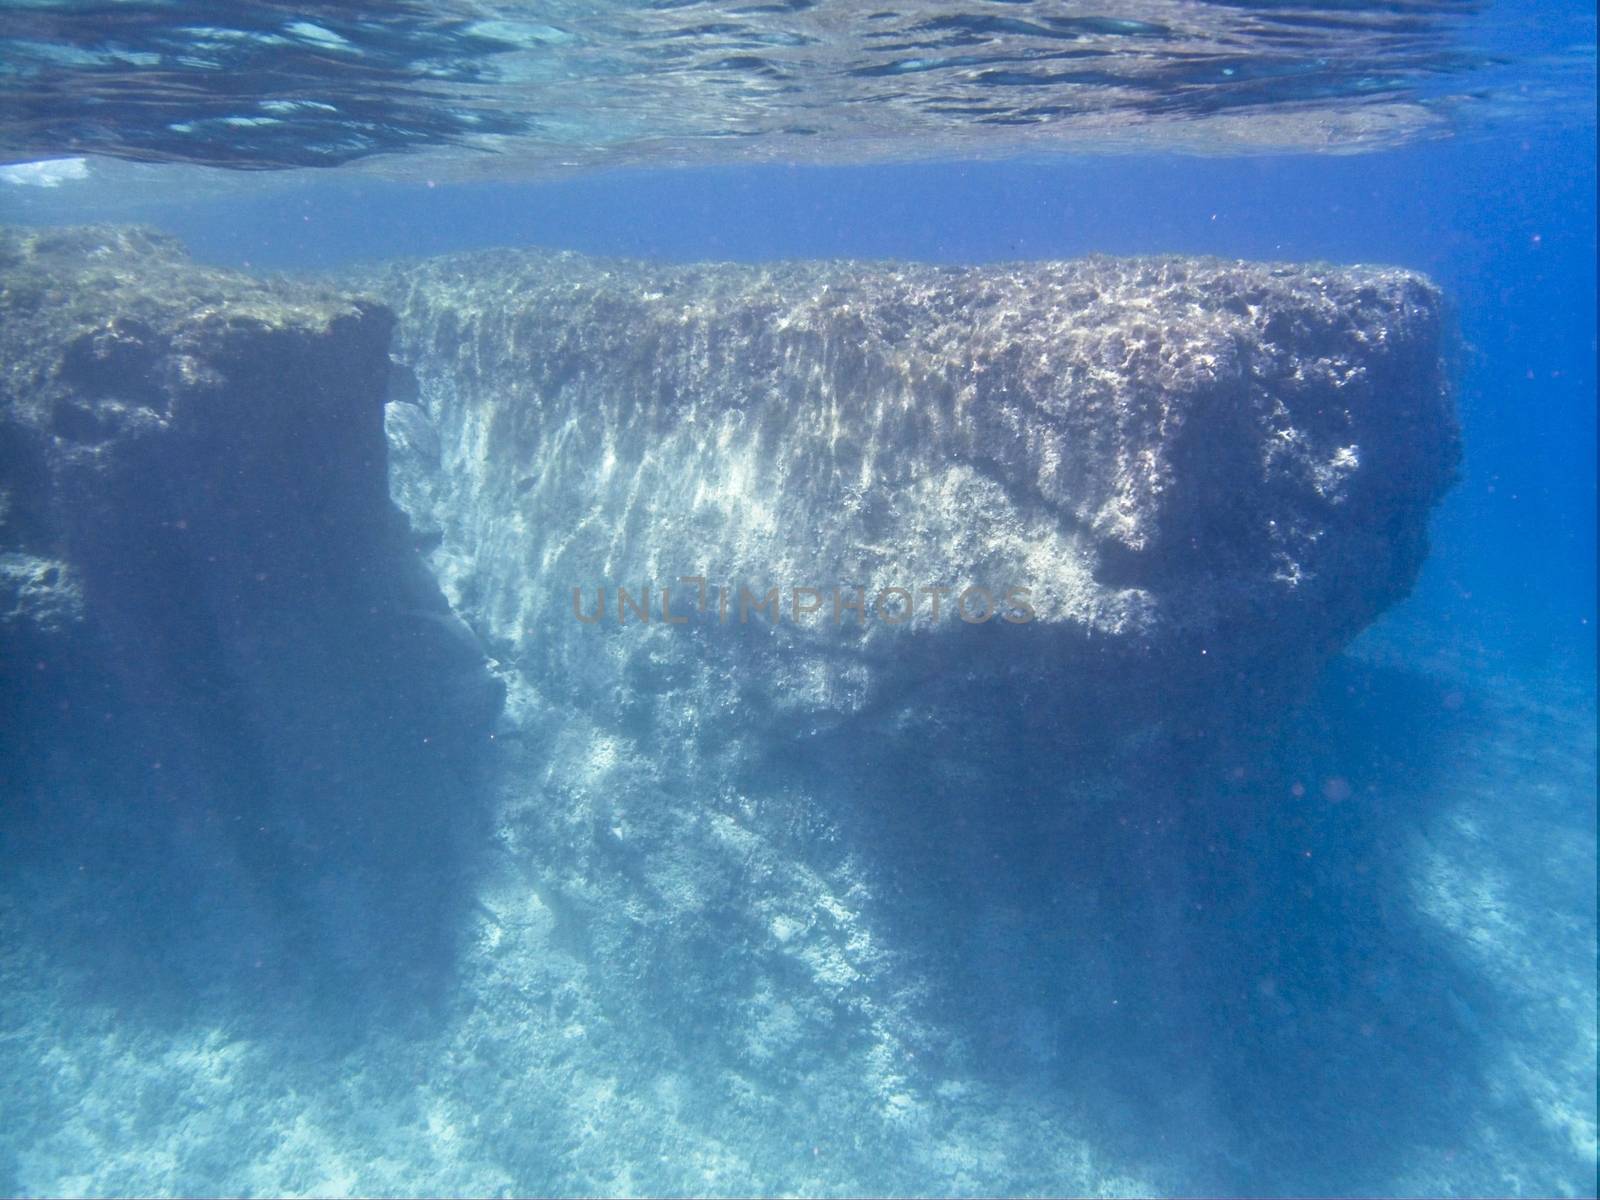 Underwater World by PhotoWorks